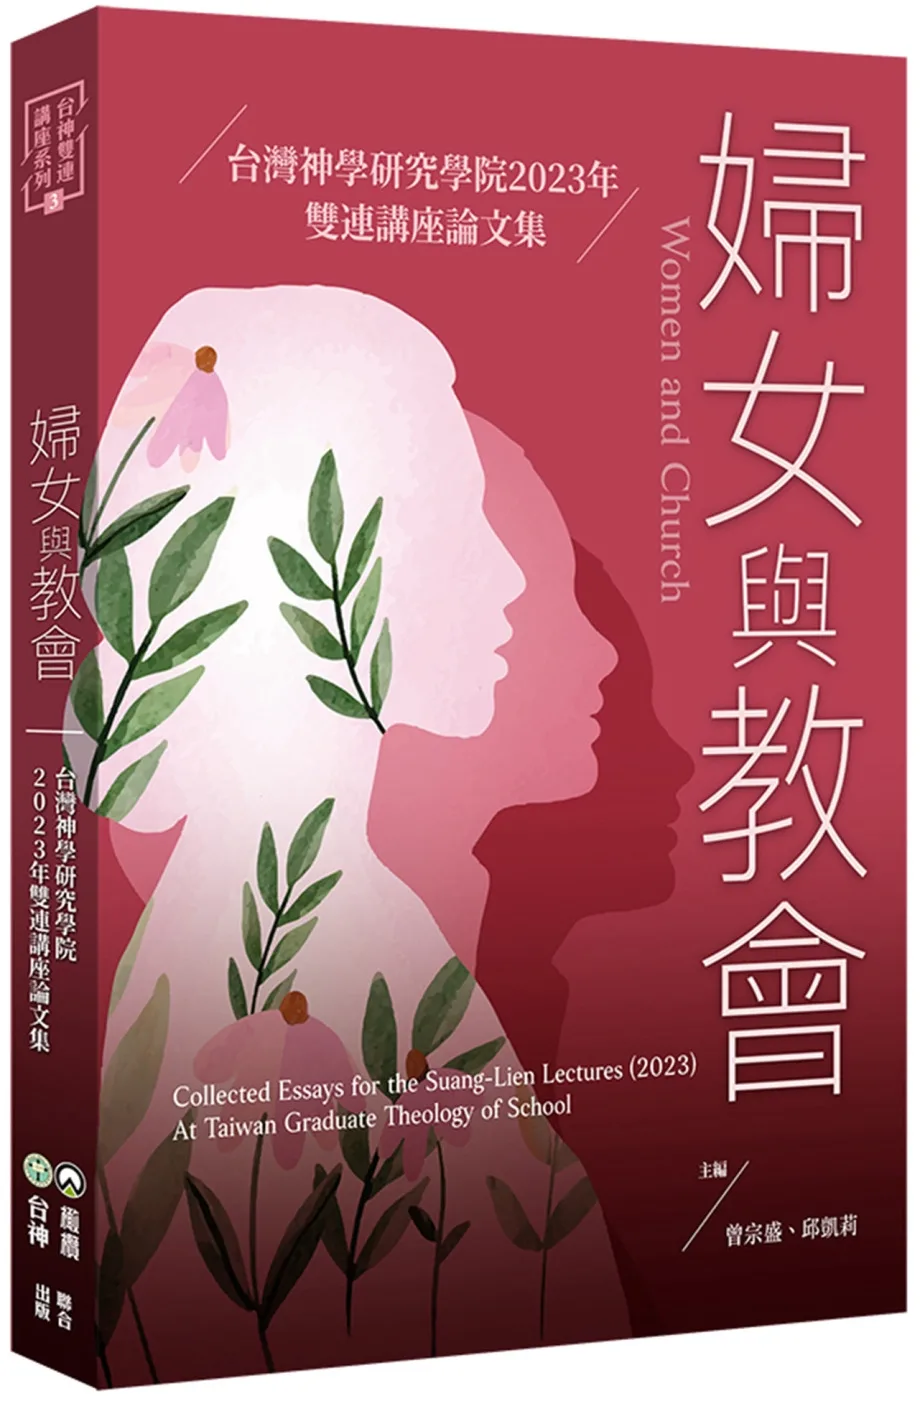 婦女與教會：台灣神學研究學院2023年雙連講座論文集